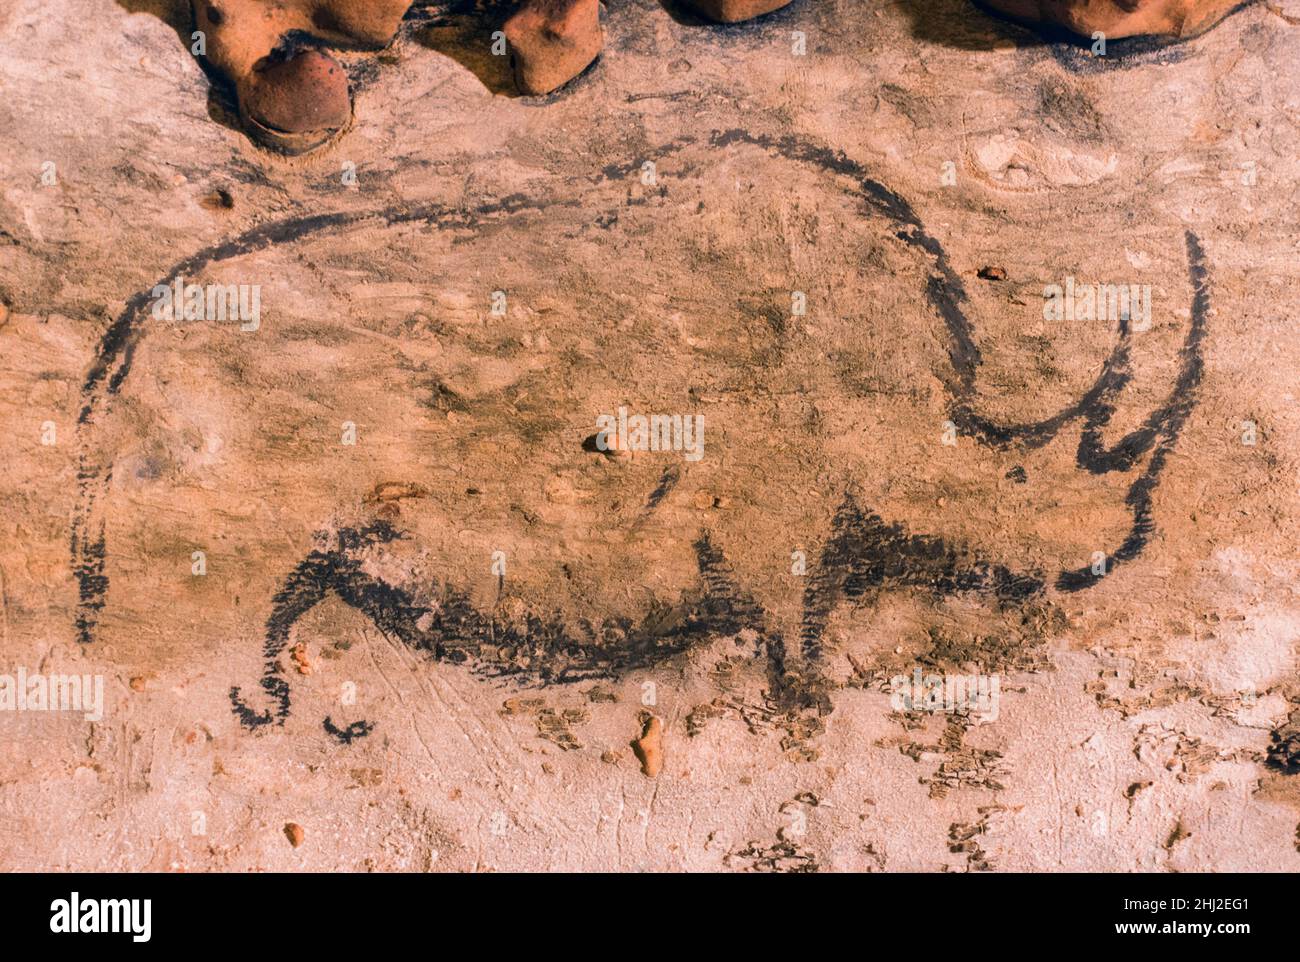 Peintures rupestres préhistoriques, rhinocéros laineux, Rouffignac, France Banque D'Images